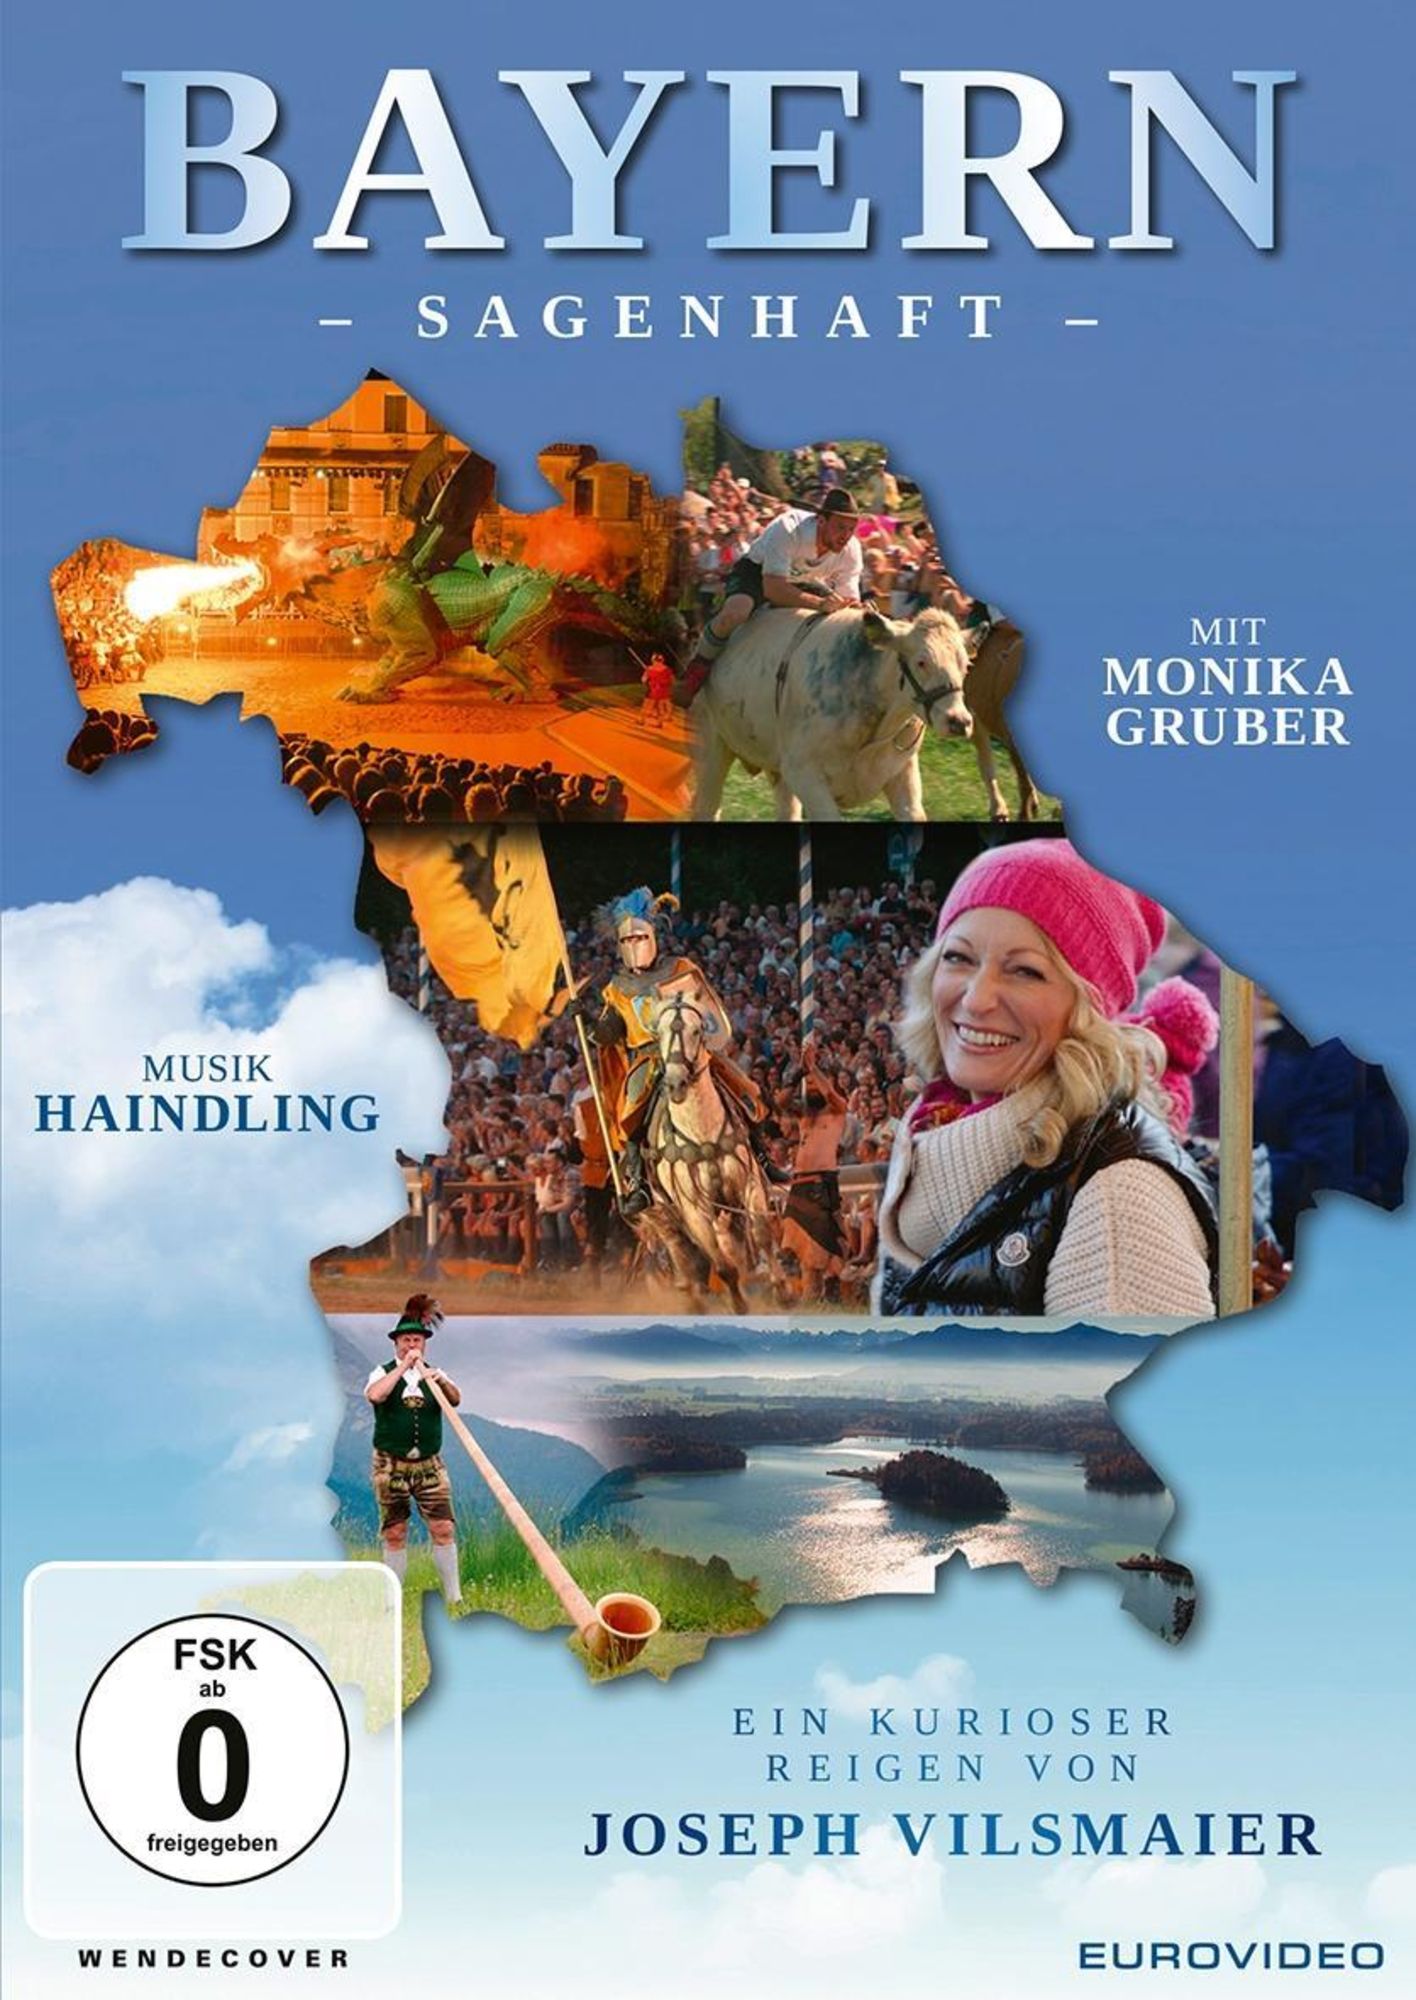 Bayern - Sagenhaft' von 'Joseph Vilsmaier' - 'DVD